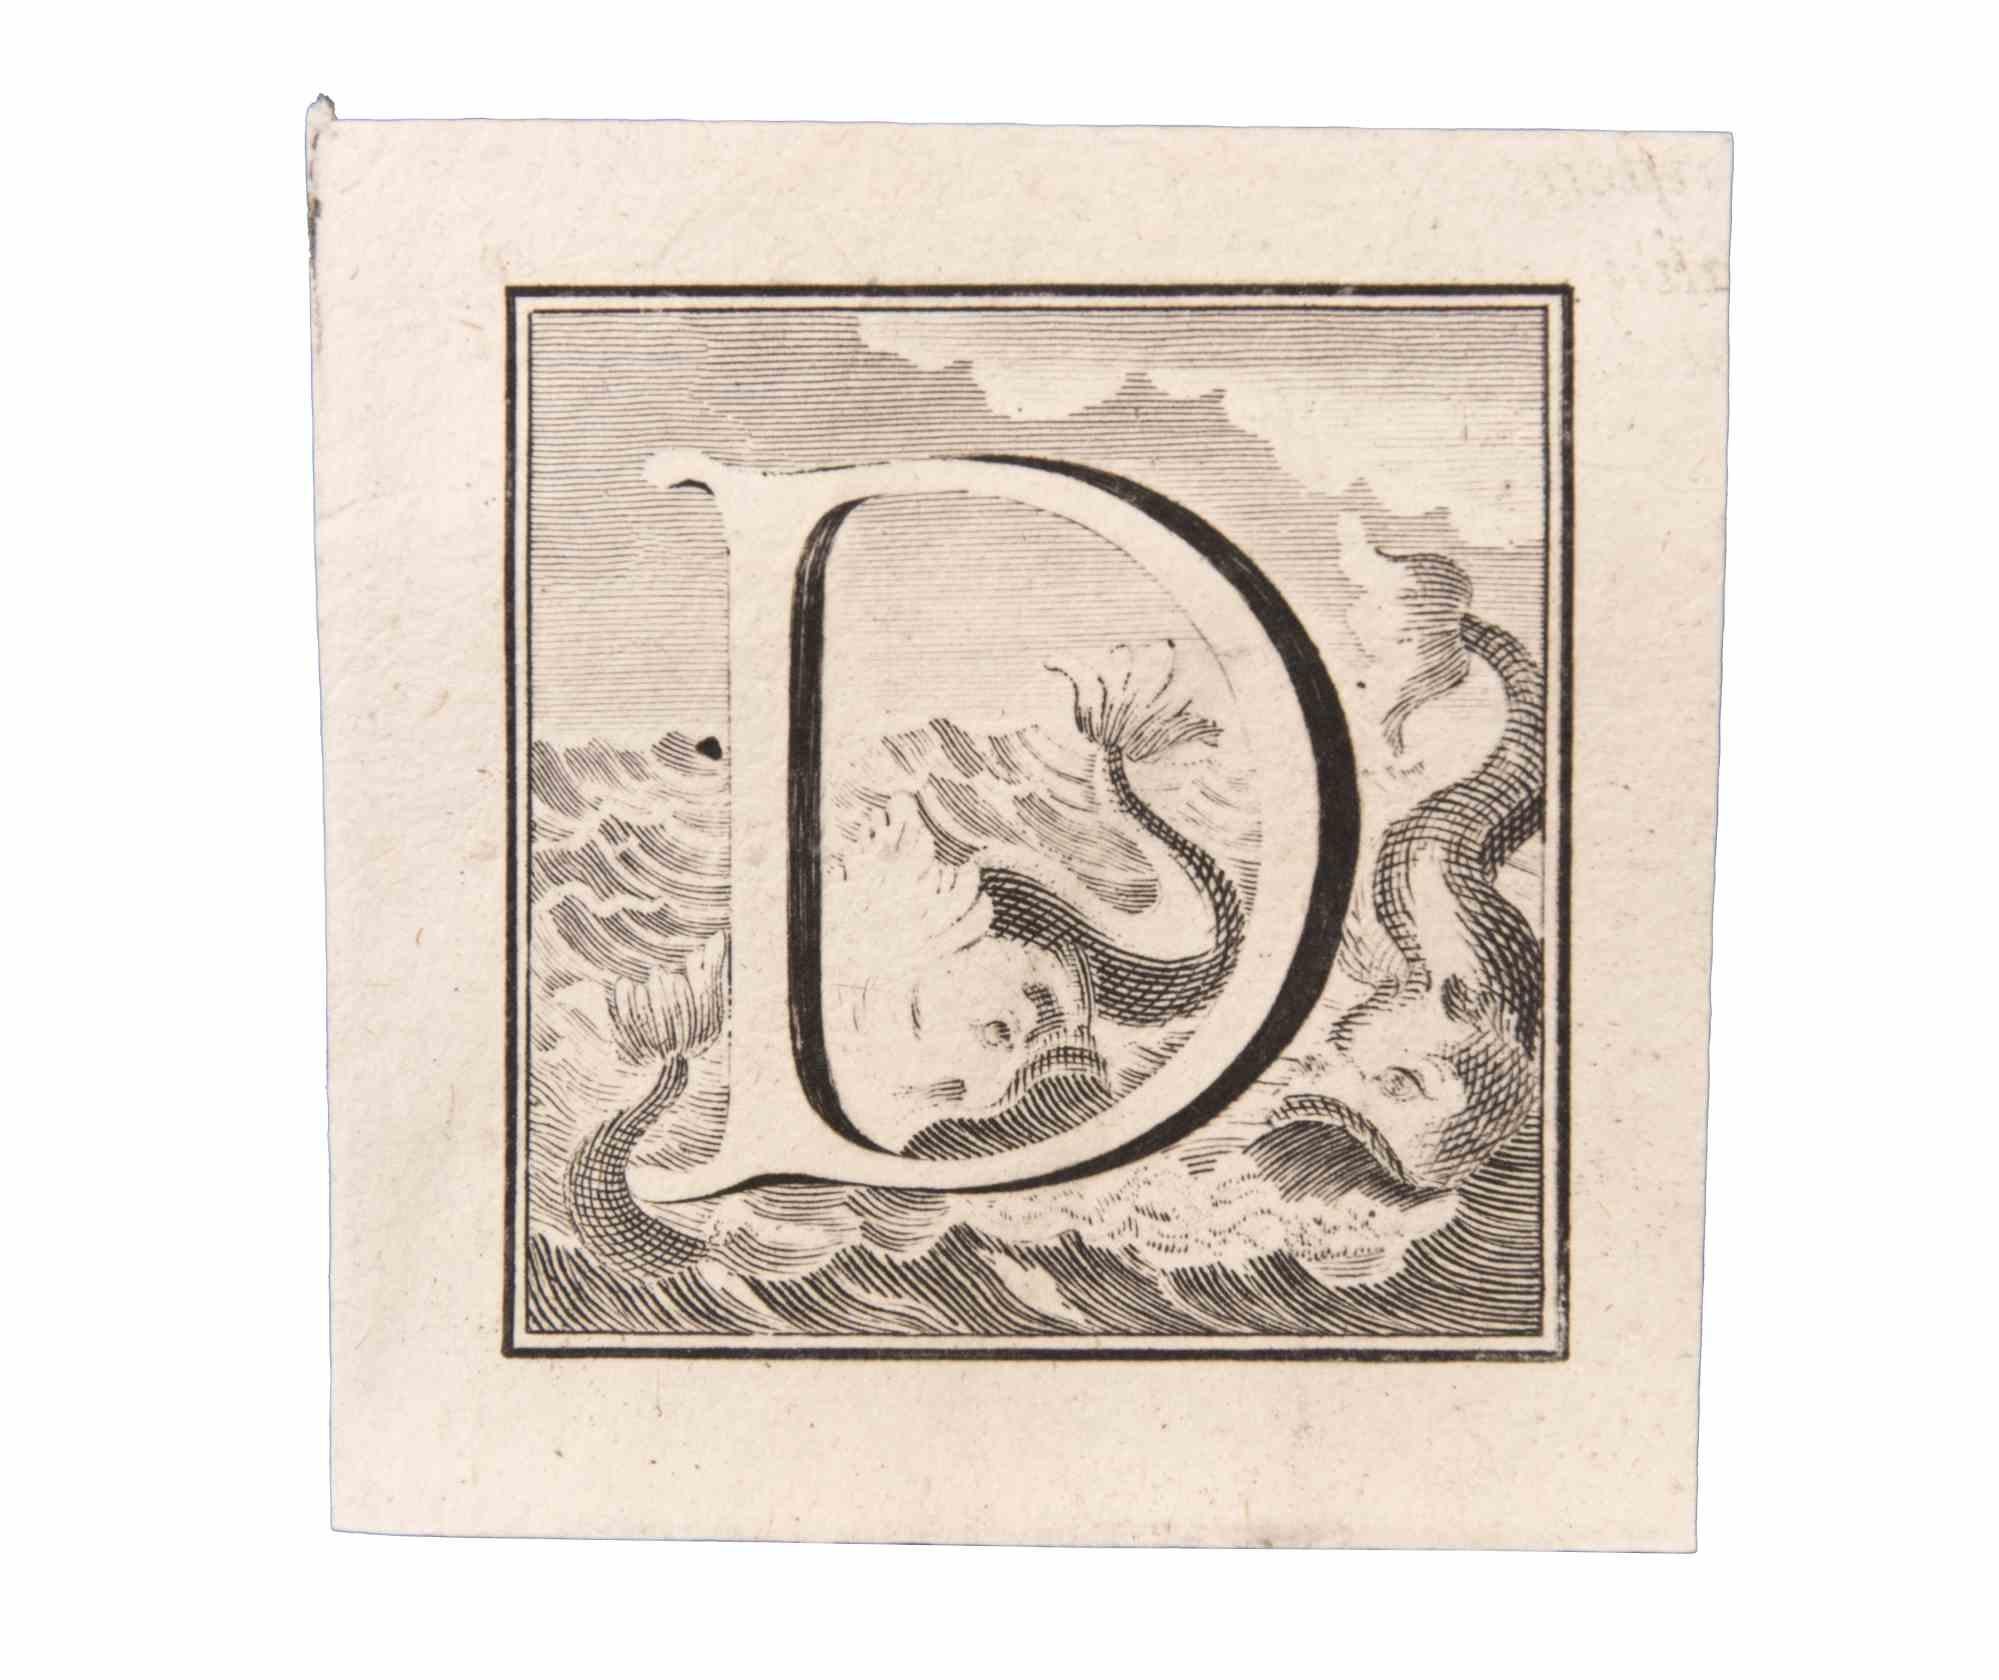 Buchstabe D ist eine Radierung von Luigi Vanvitelli Künstler des 18. Jahrhunderts realisiert.

Die Radierung gehört zu der Druckserie "Antiquities of Herculaneum Exposed" (Originaltitel: "Le Antichità di Ercolano Esposte"), einem achtbändigen Band